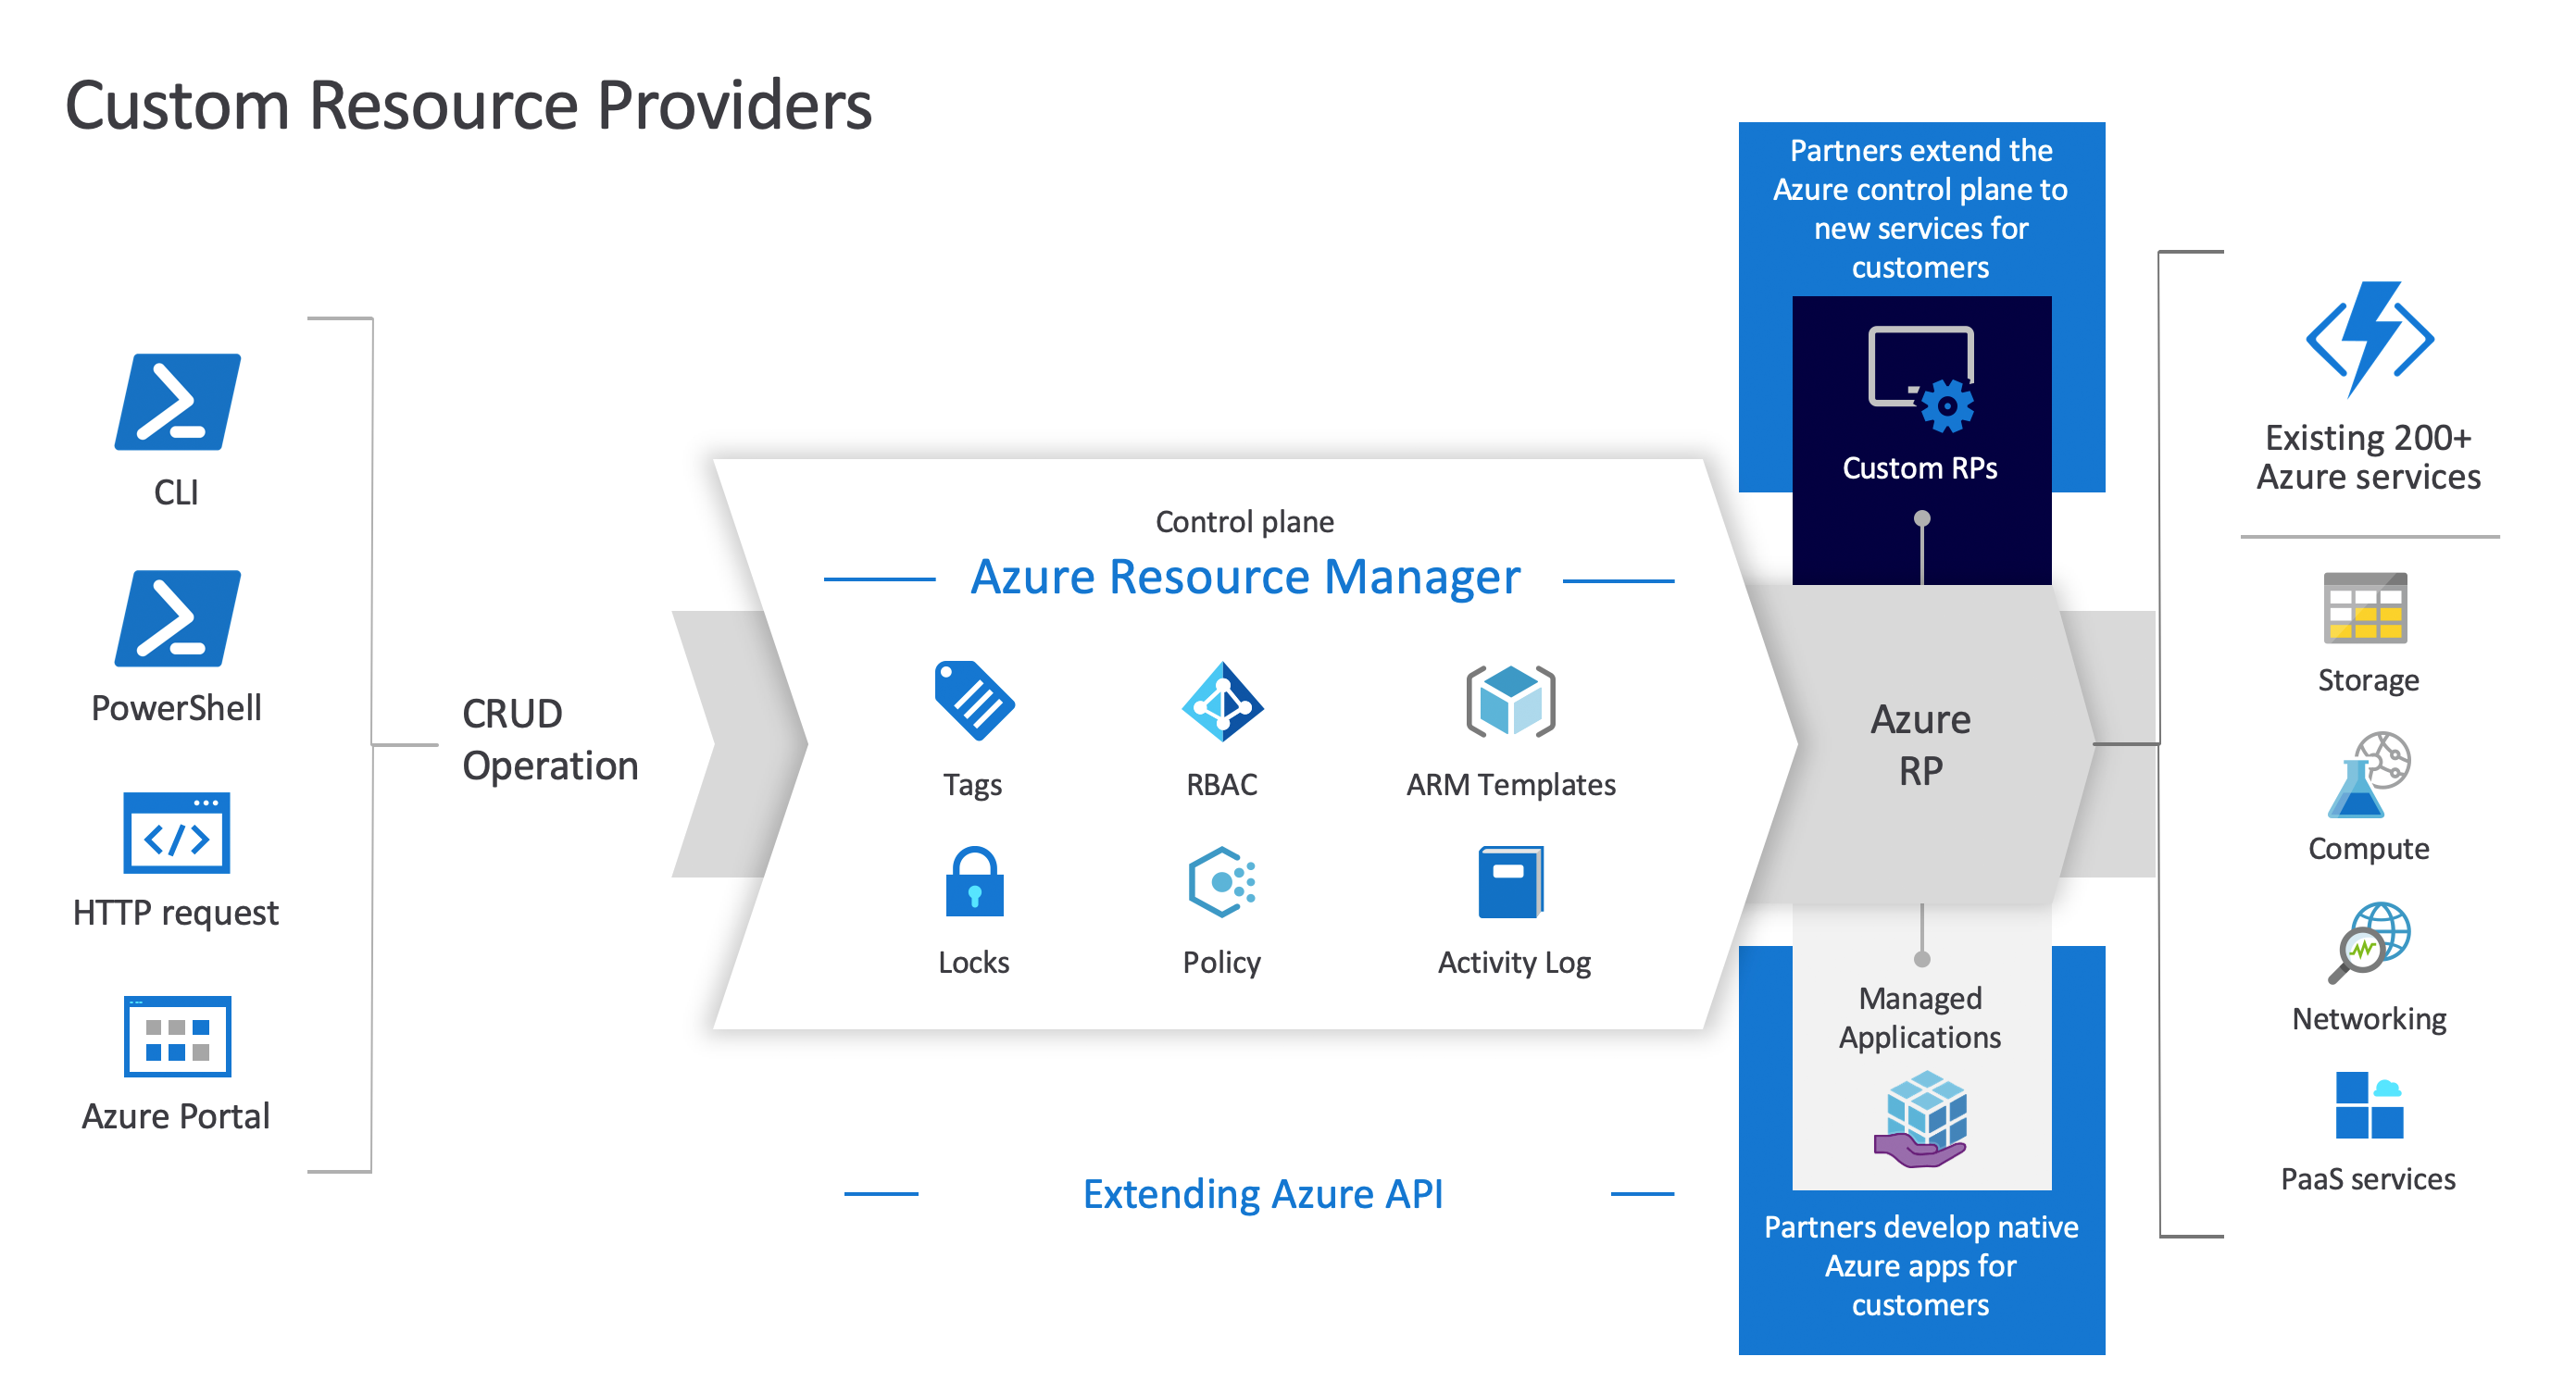 Diagrama dos Provedores de Recursos Personalizados do Azure, exibindo a relação entre o Azure Resource Manager, os provedores de recursos personalizados e os recursos.